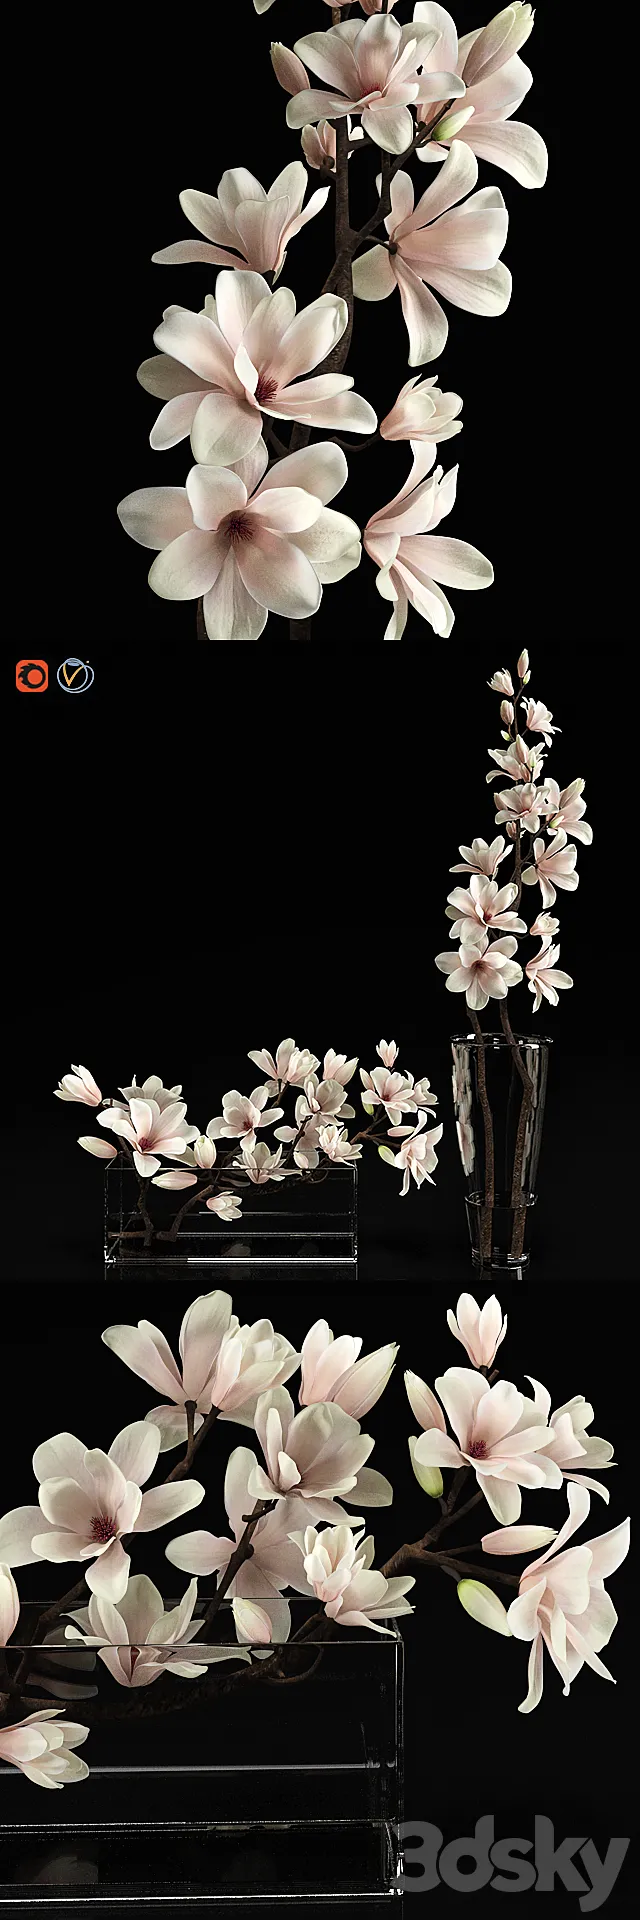 Plants – Flowers – 3D Models Download – 0459